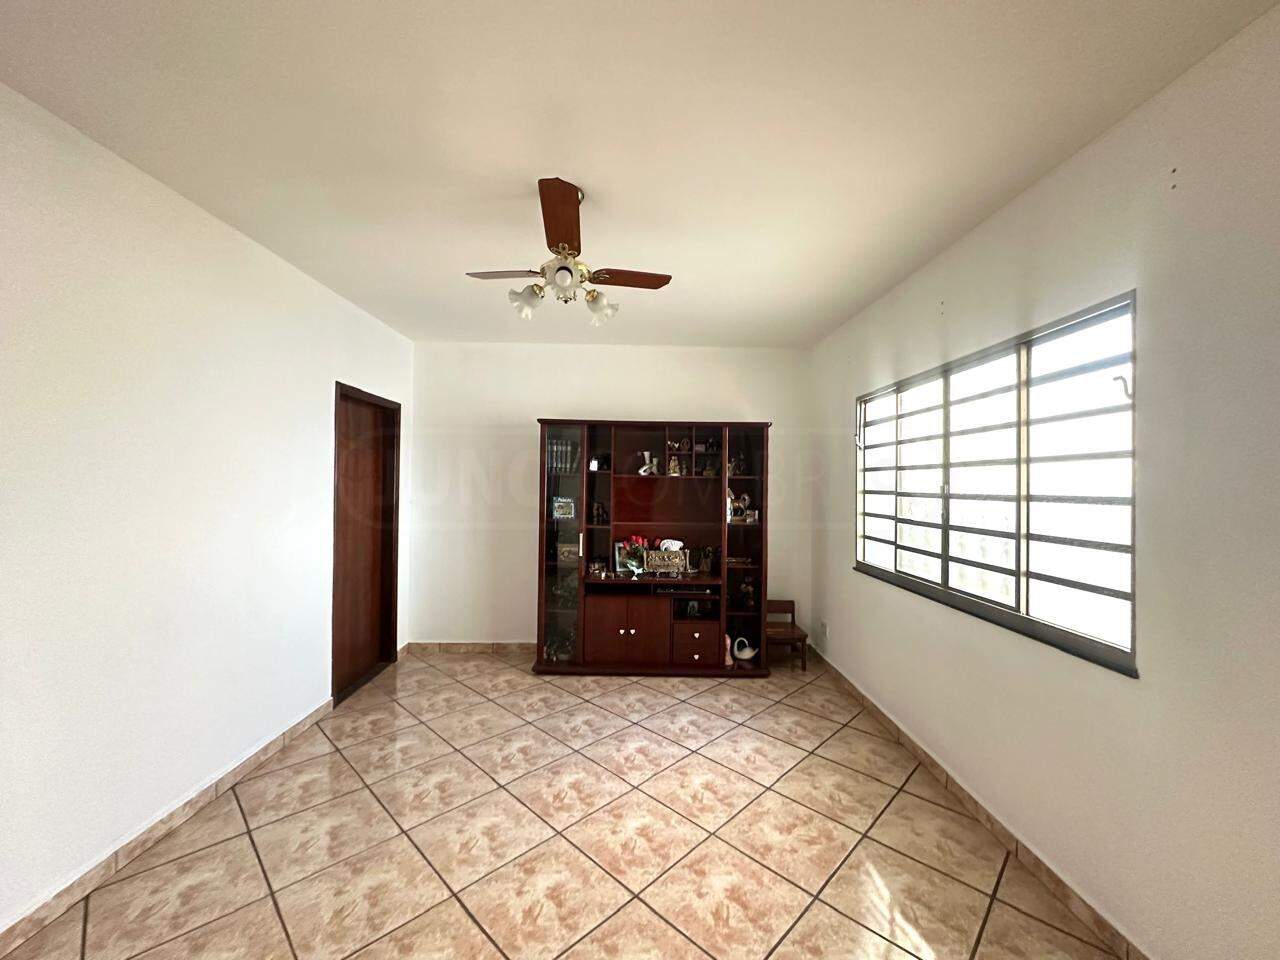 Casa à venda, 3 quartos, 2 vagas, no bairro Vila Rezende em Piracicaba - SP